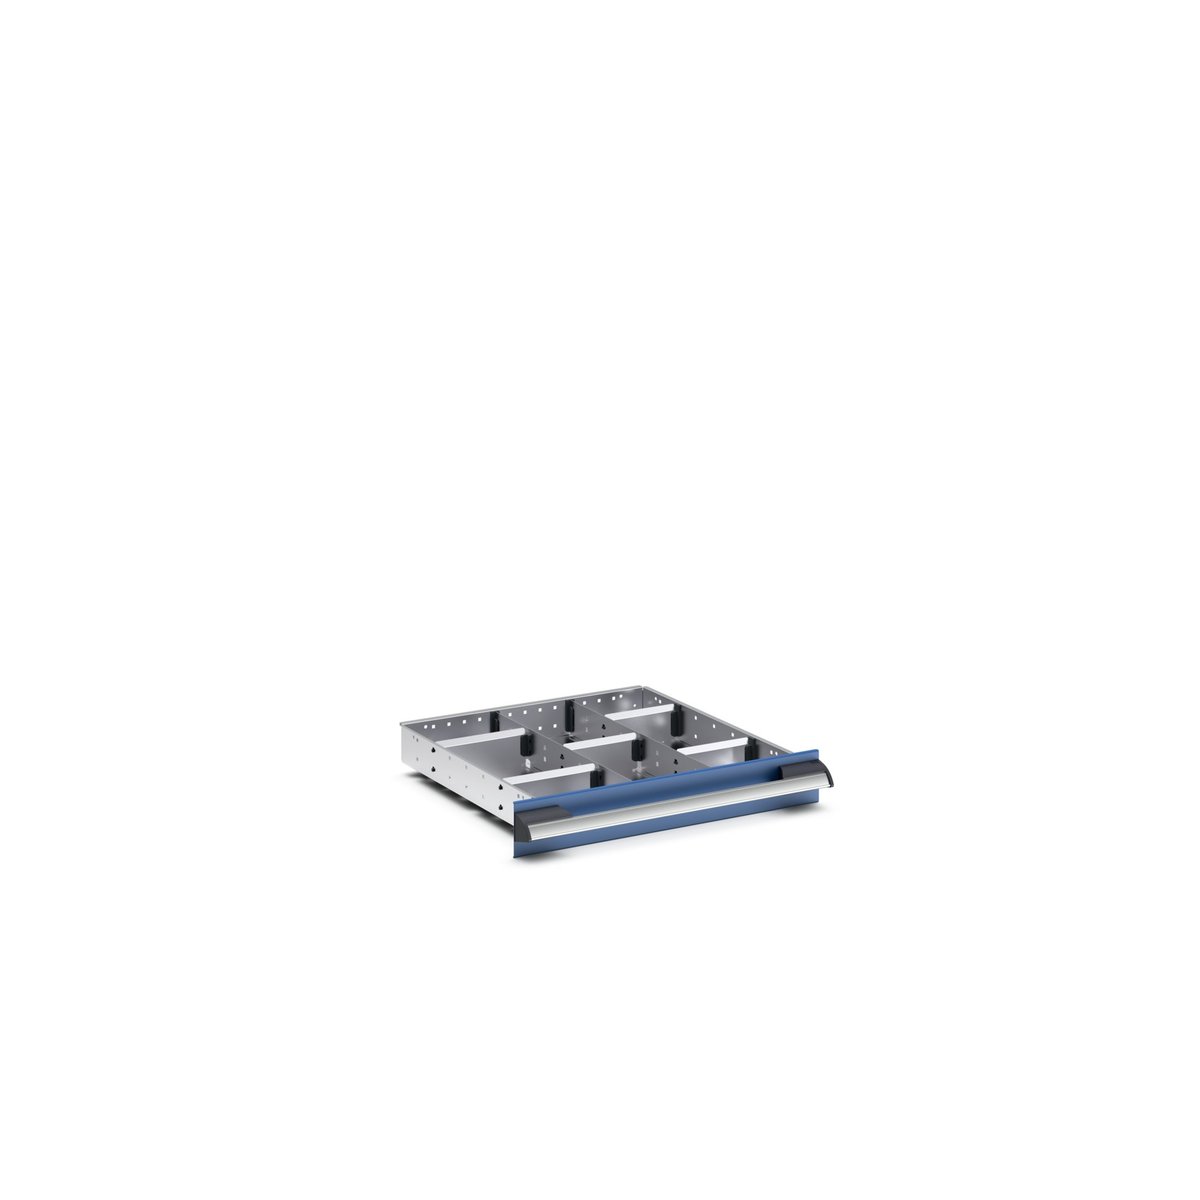 43020623.51 - cubio adjustable divider kit